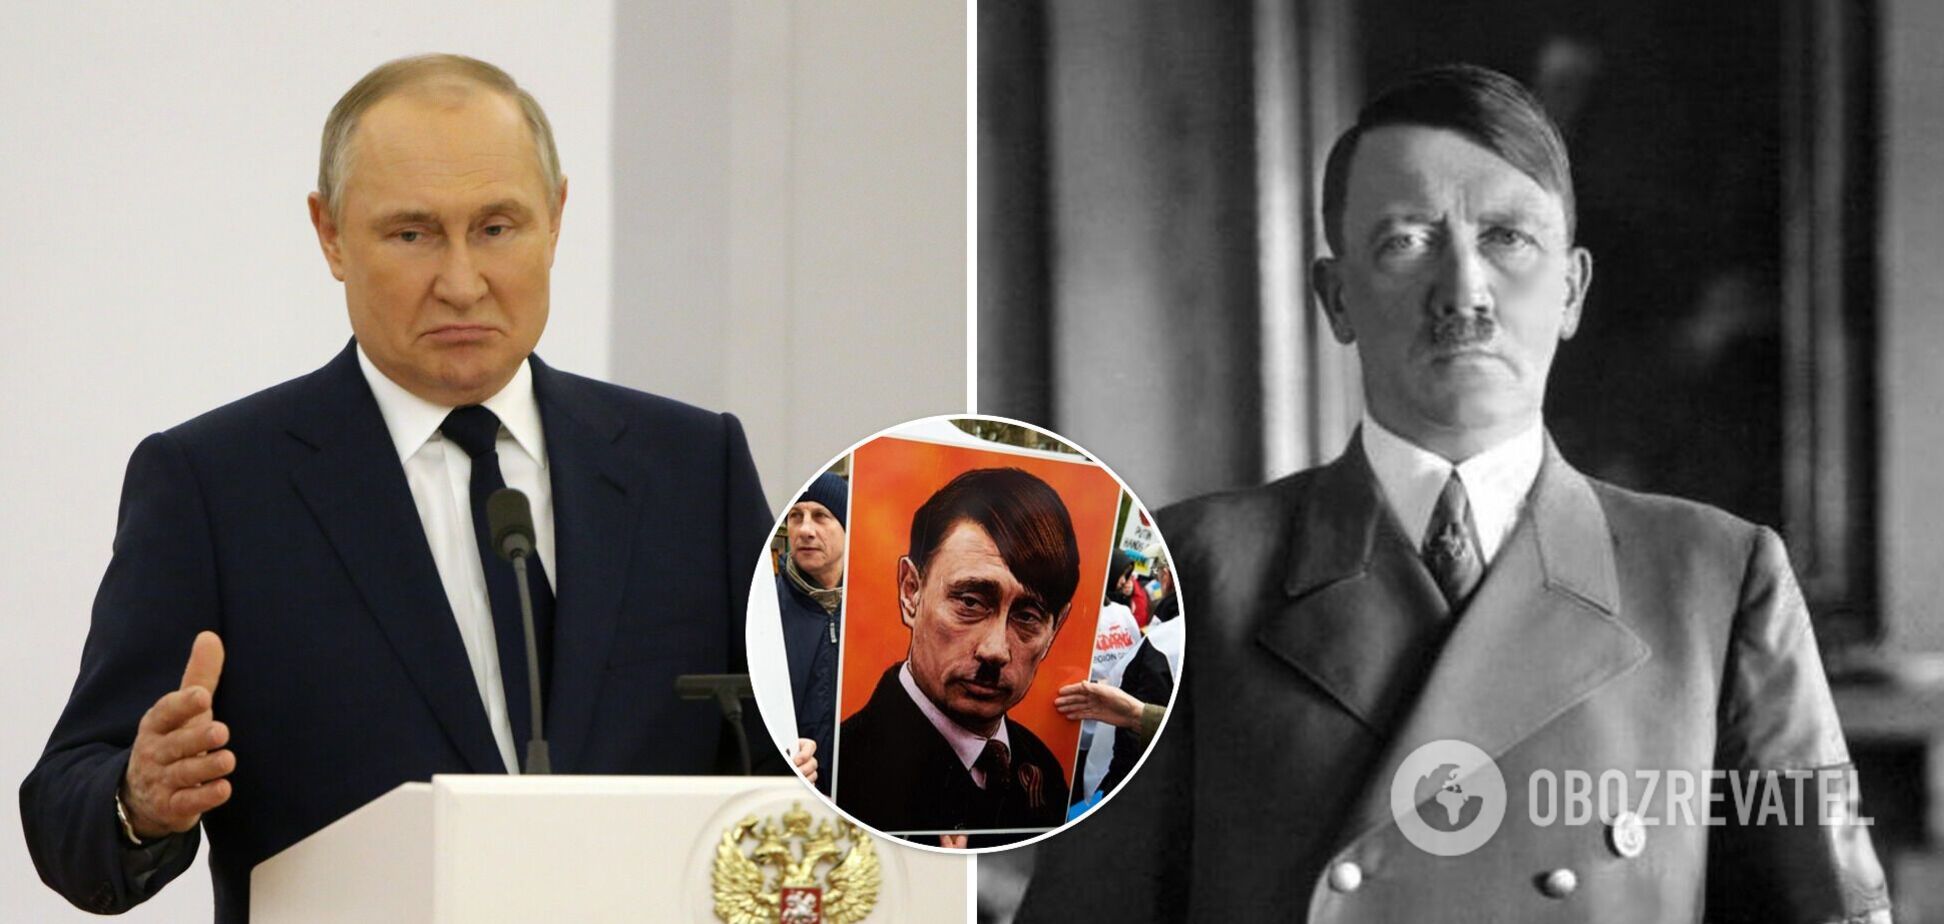 Кислица: у Путина есть два выхода – сдаться или повторить судьбу Гитлера